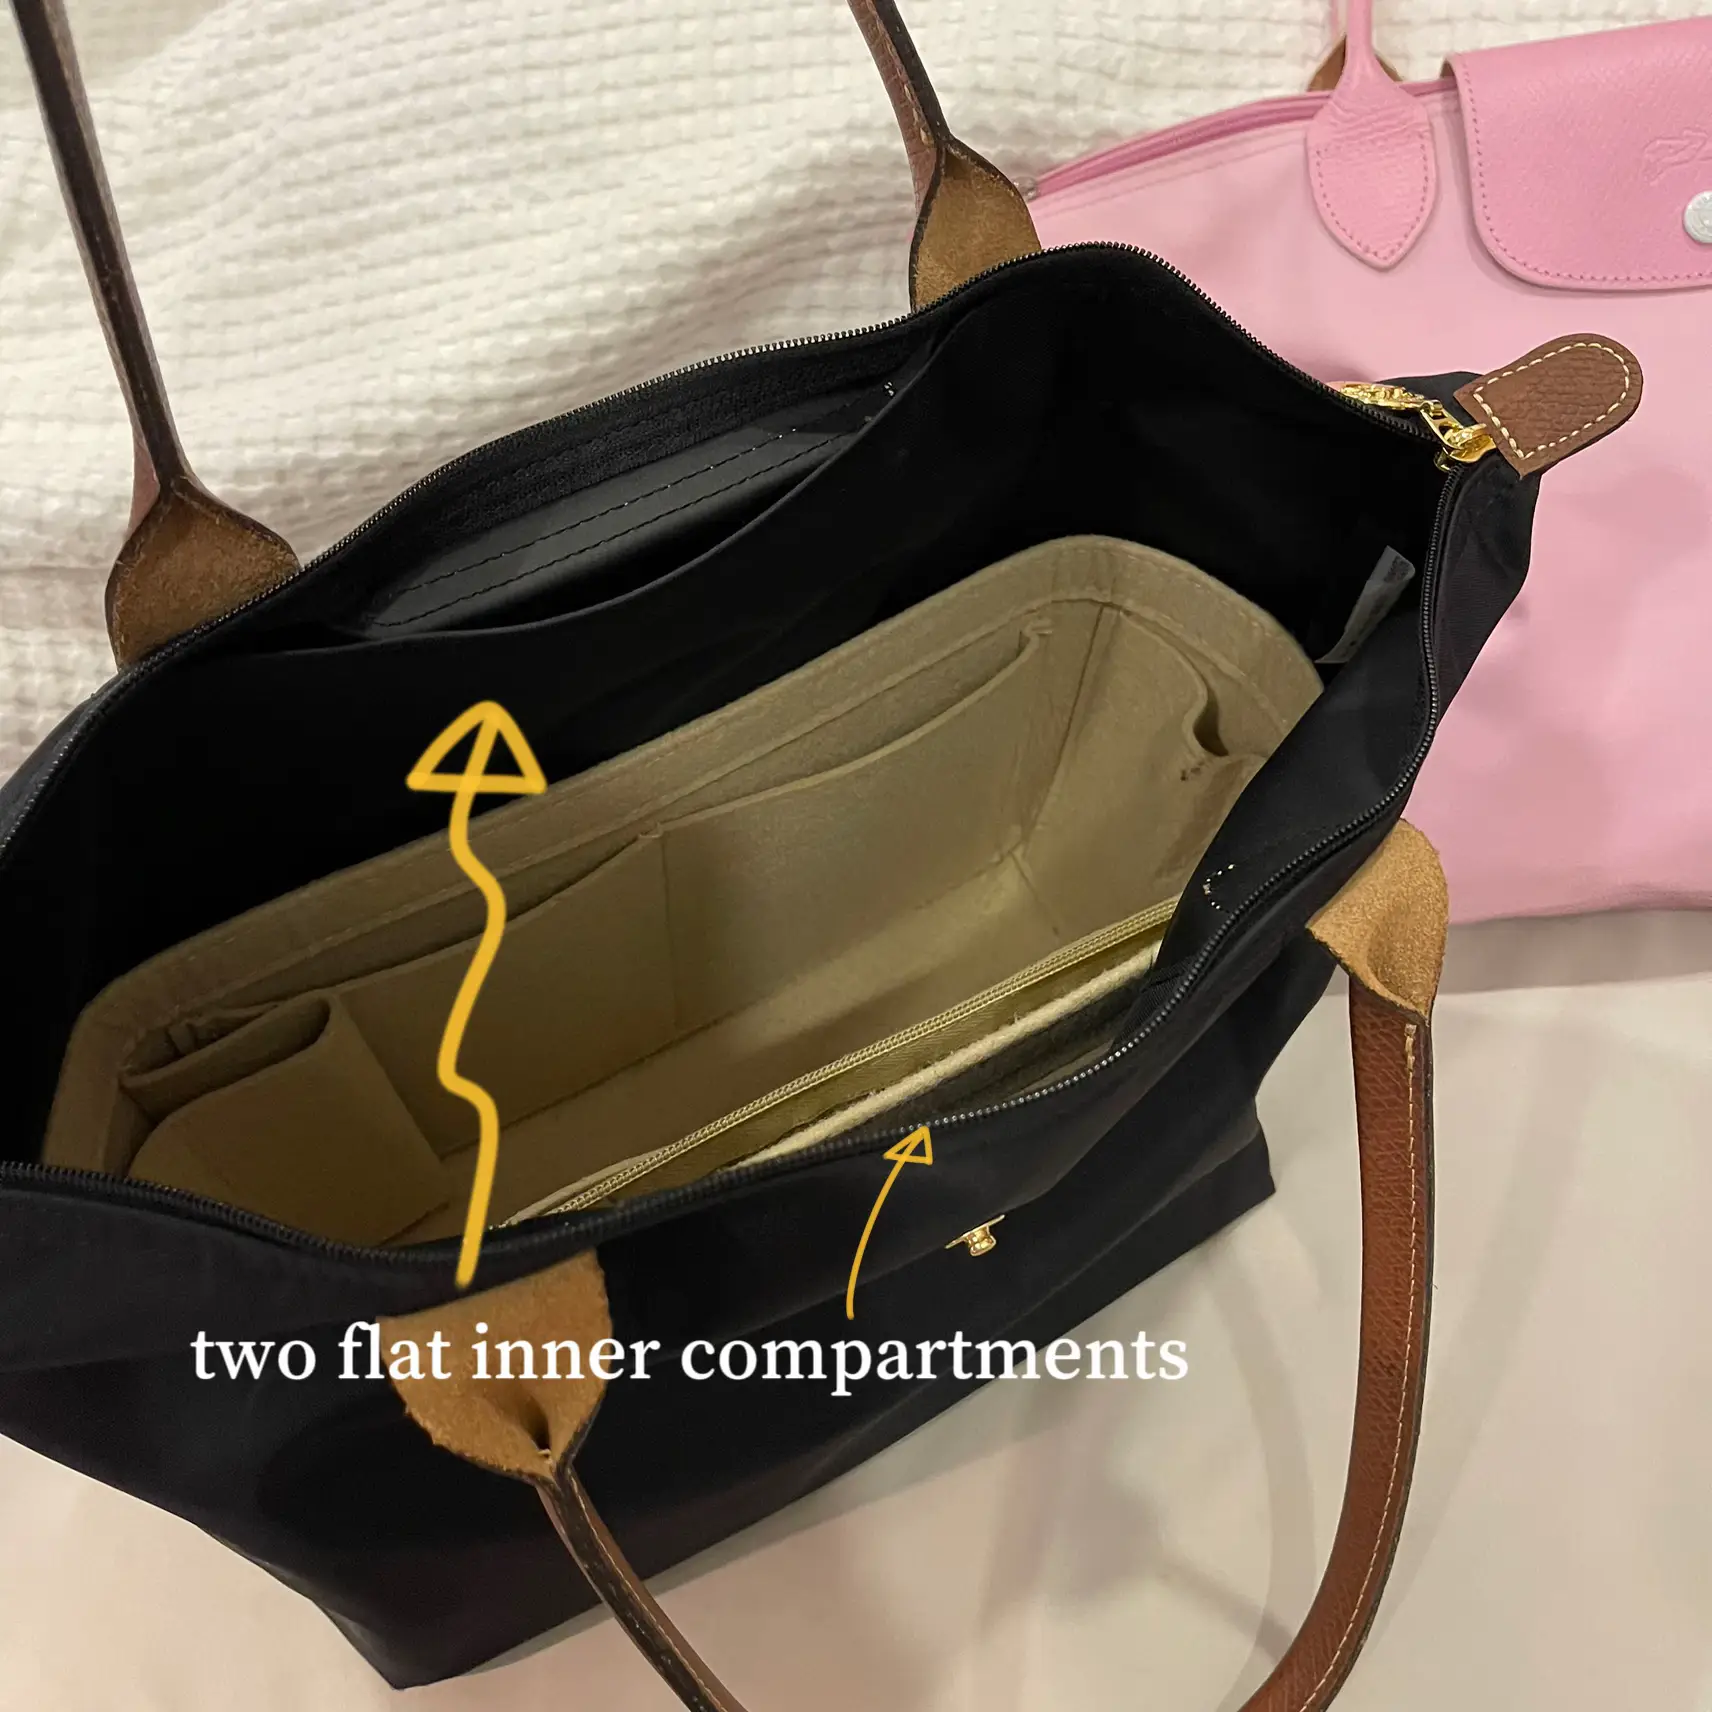 Longchamp Le Pliage Top Handle Small VS XS Size Comparison/What Fits/Mod  Shots 